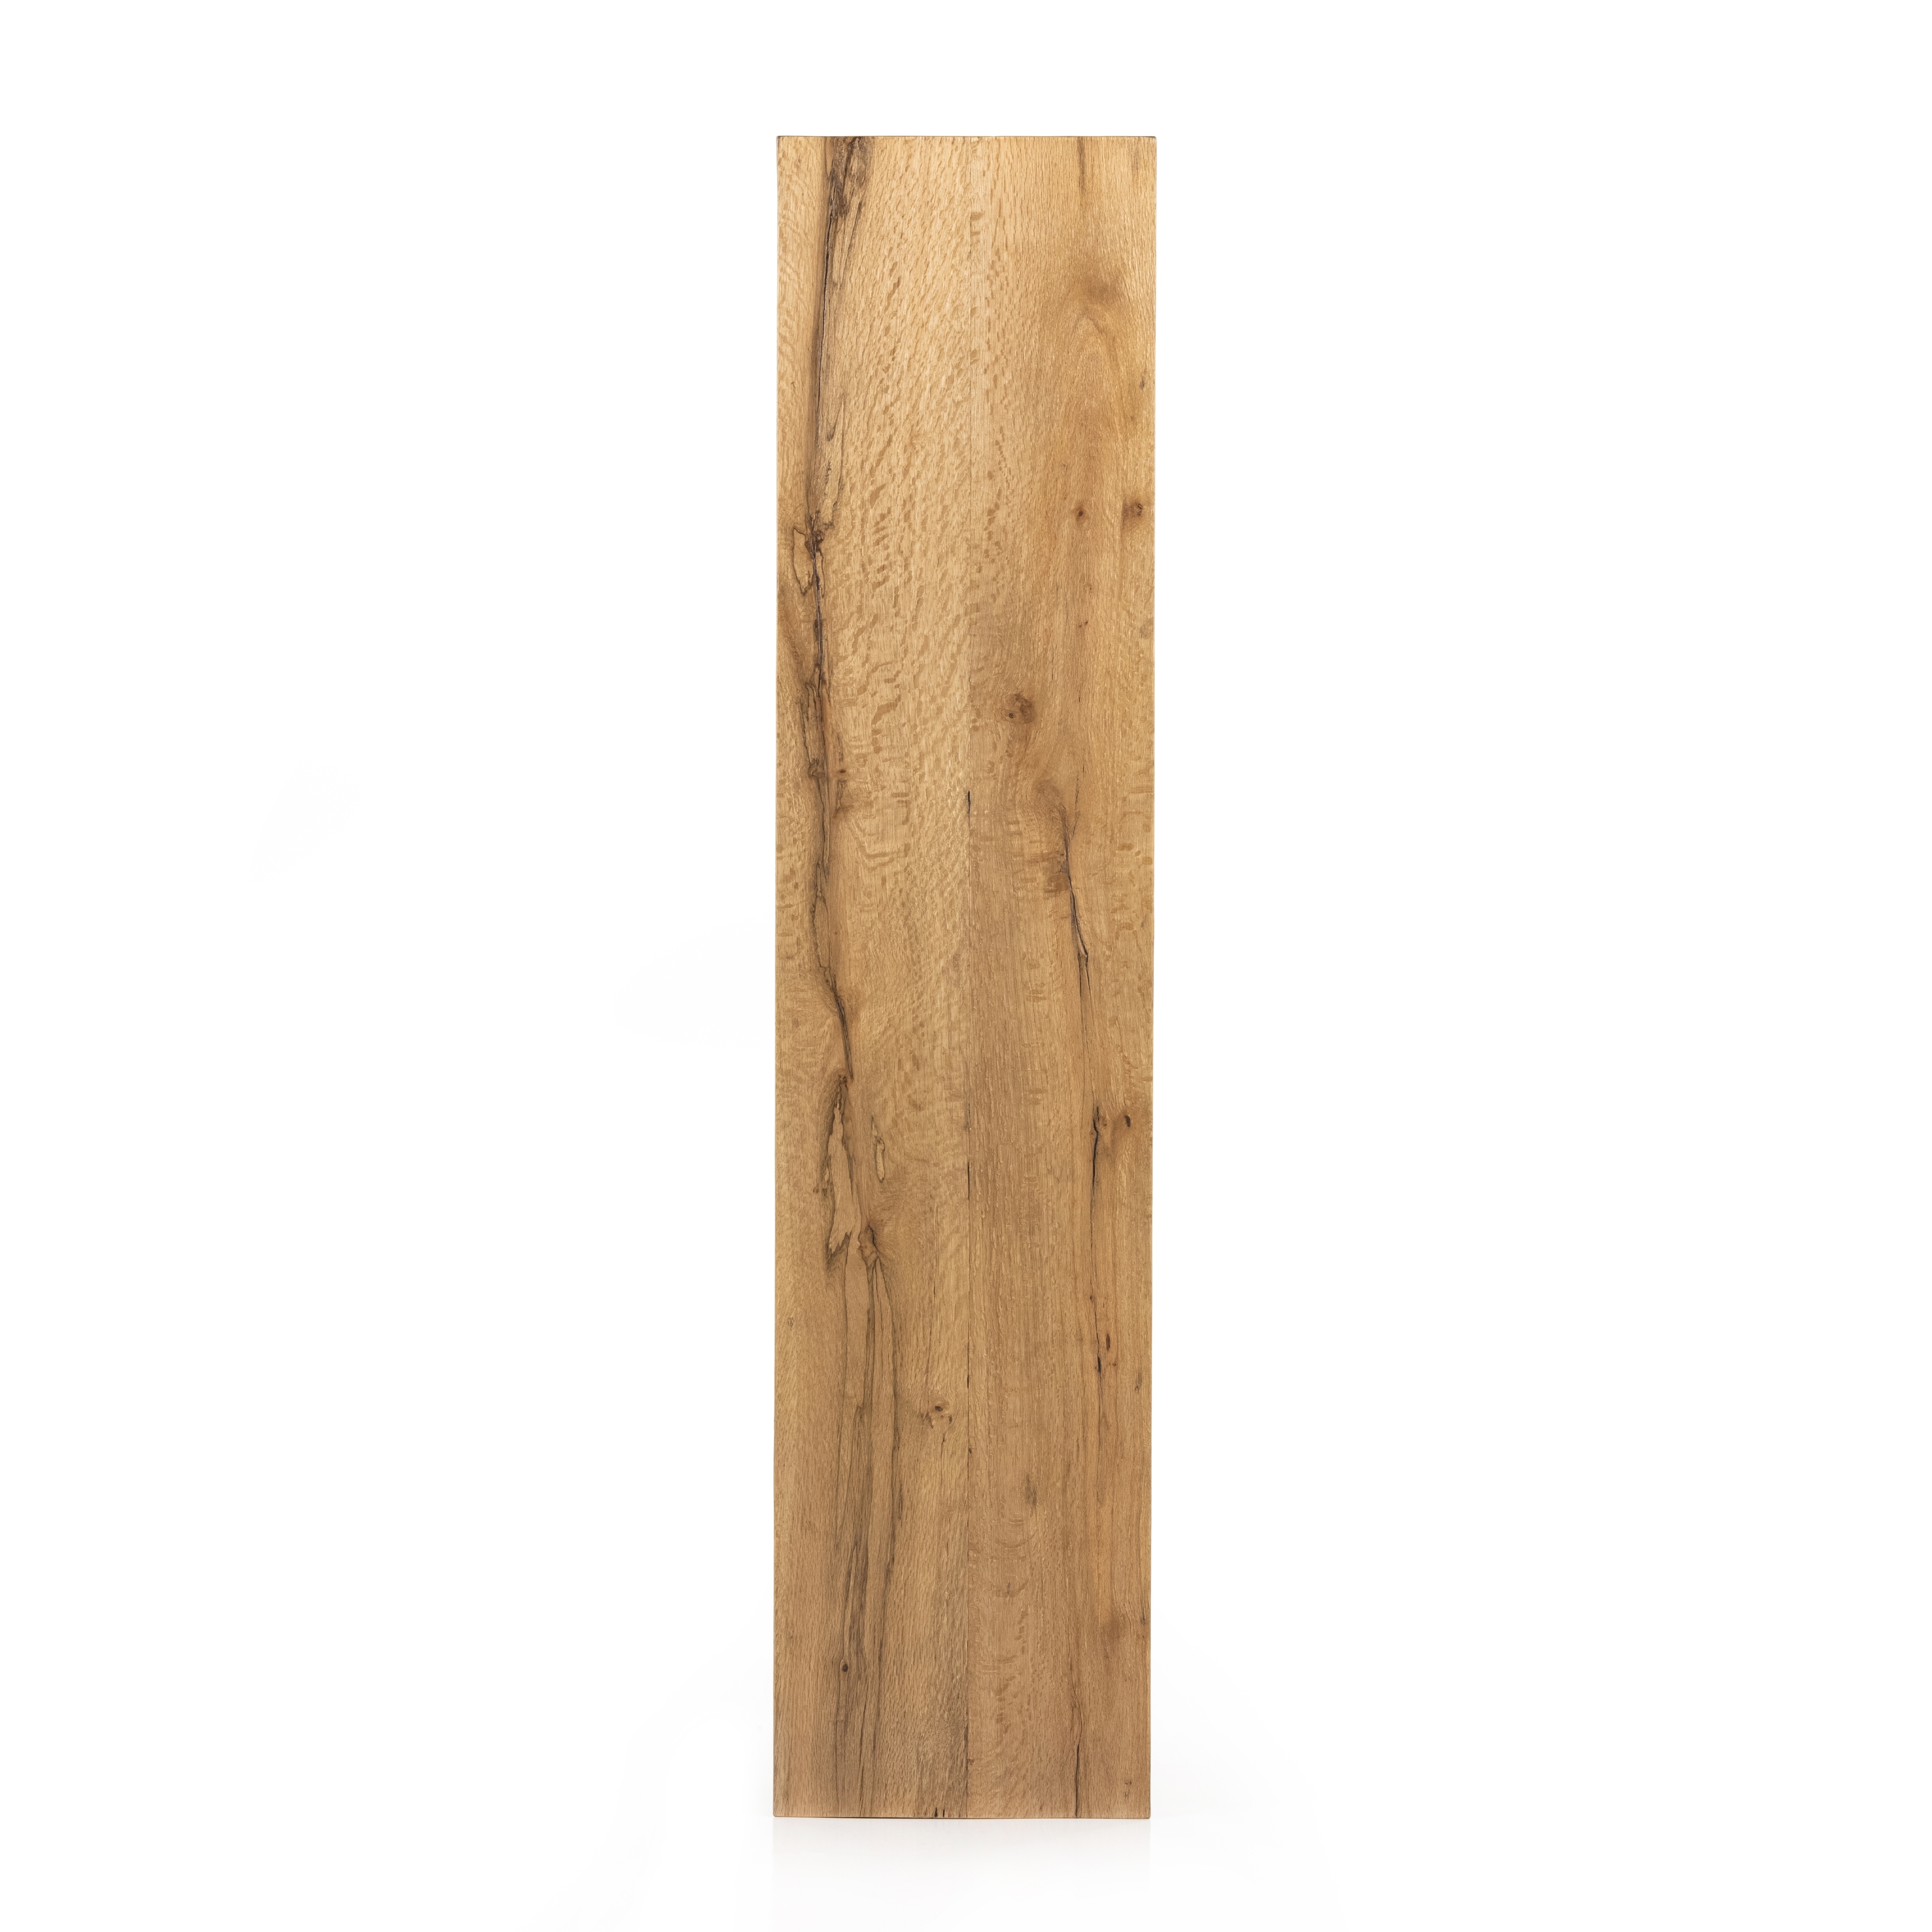 Elbert Console Table-Rustic Oak Veneer - Image 5